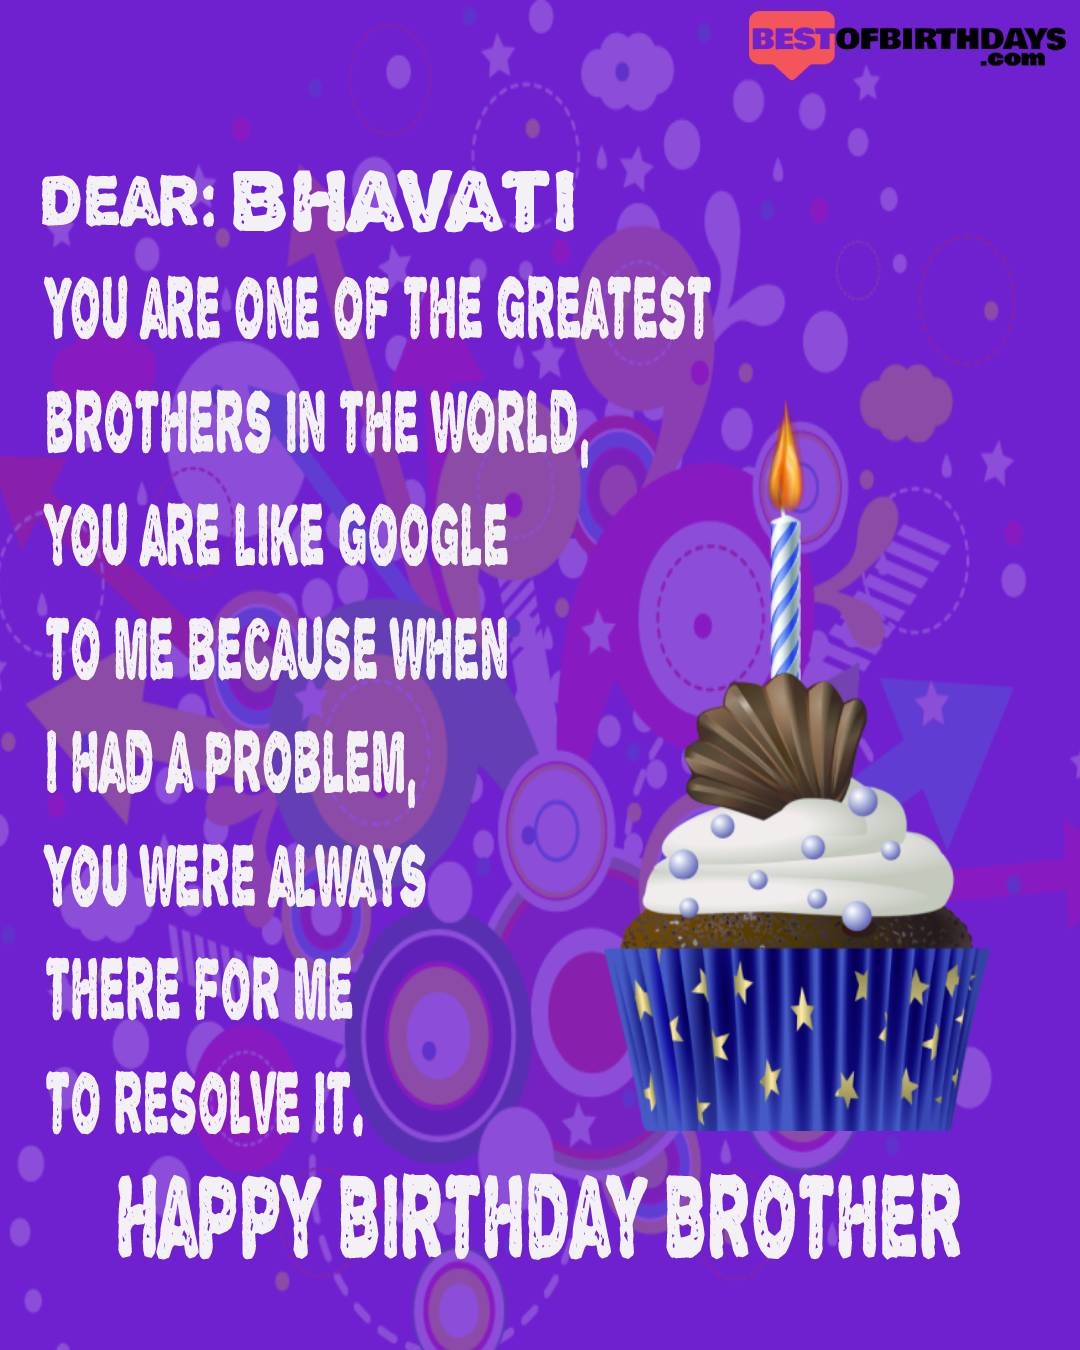 Happy birthday bhavati bhai brother bro